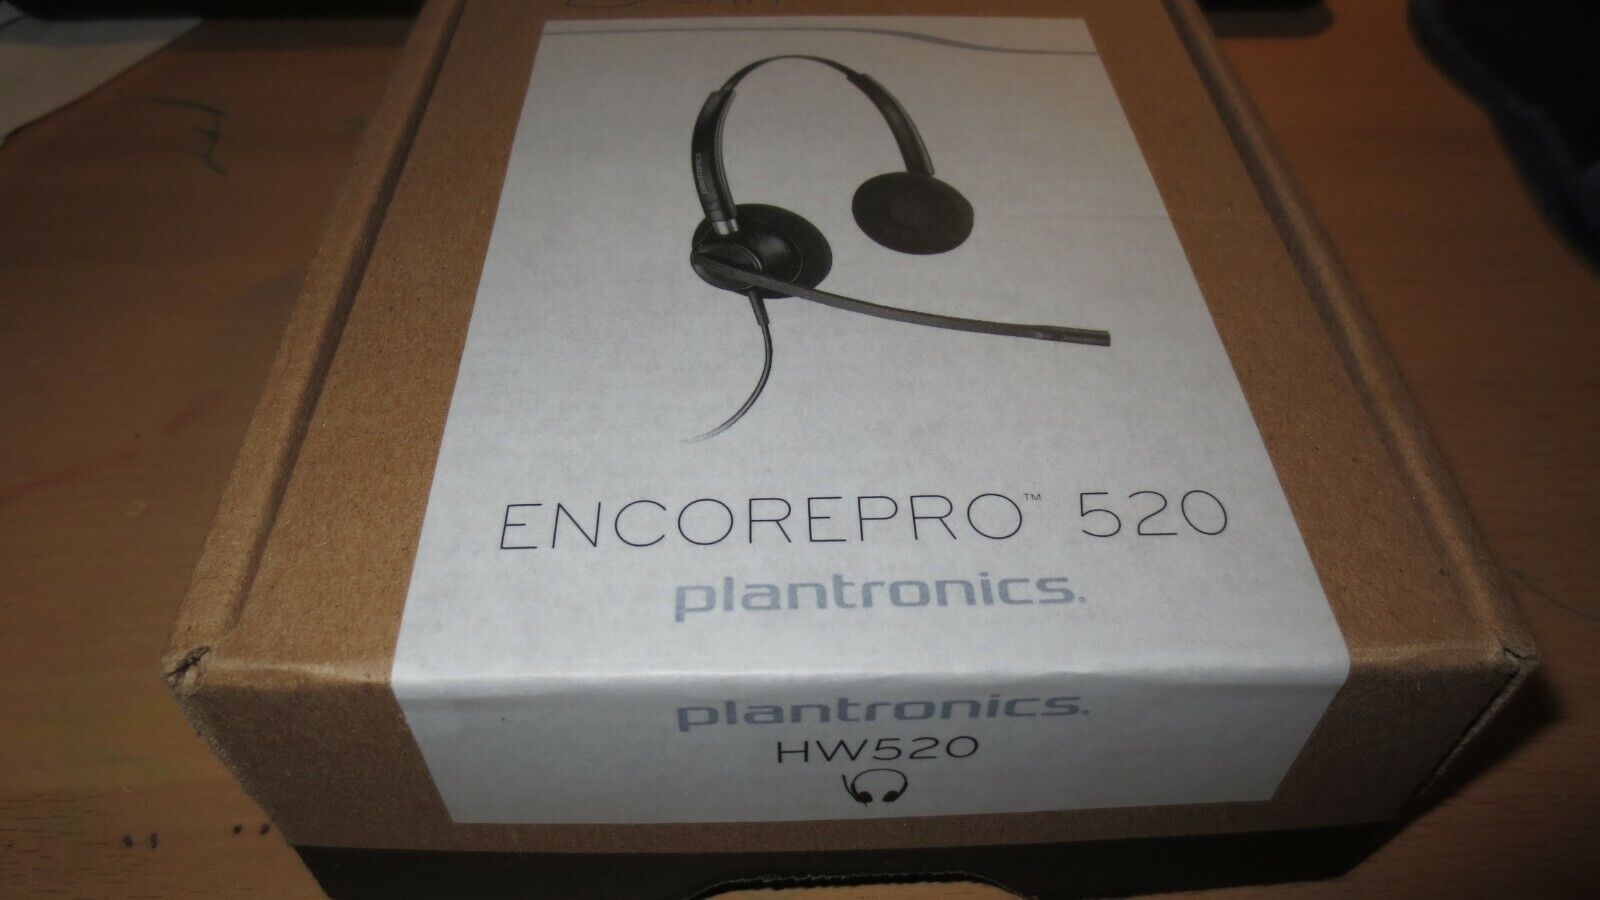 Plantronics HW520 EncorePro Noise Canceling Binaural Headset - like new